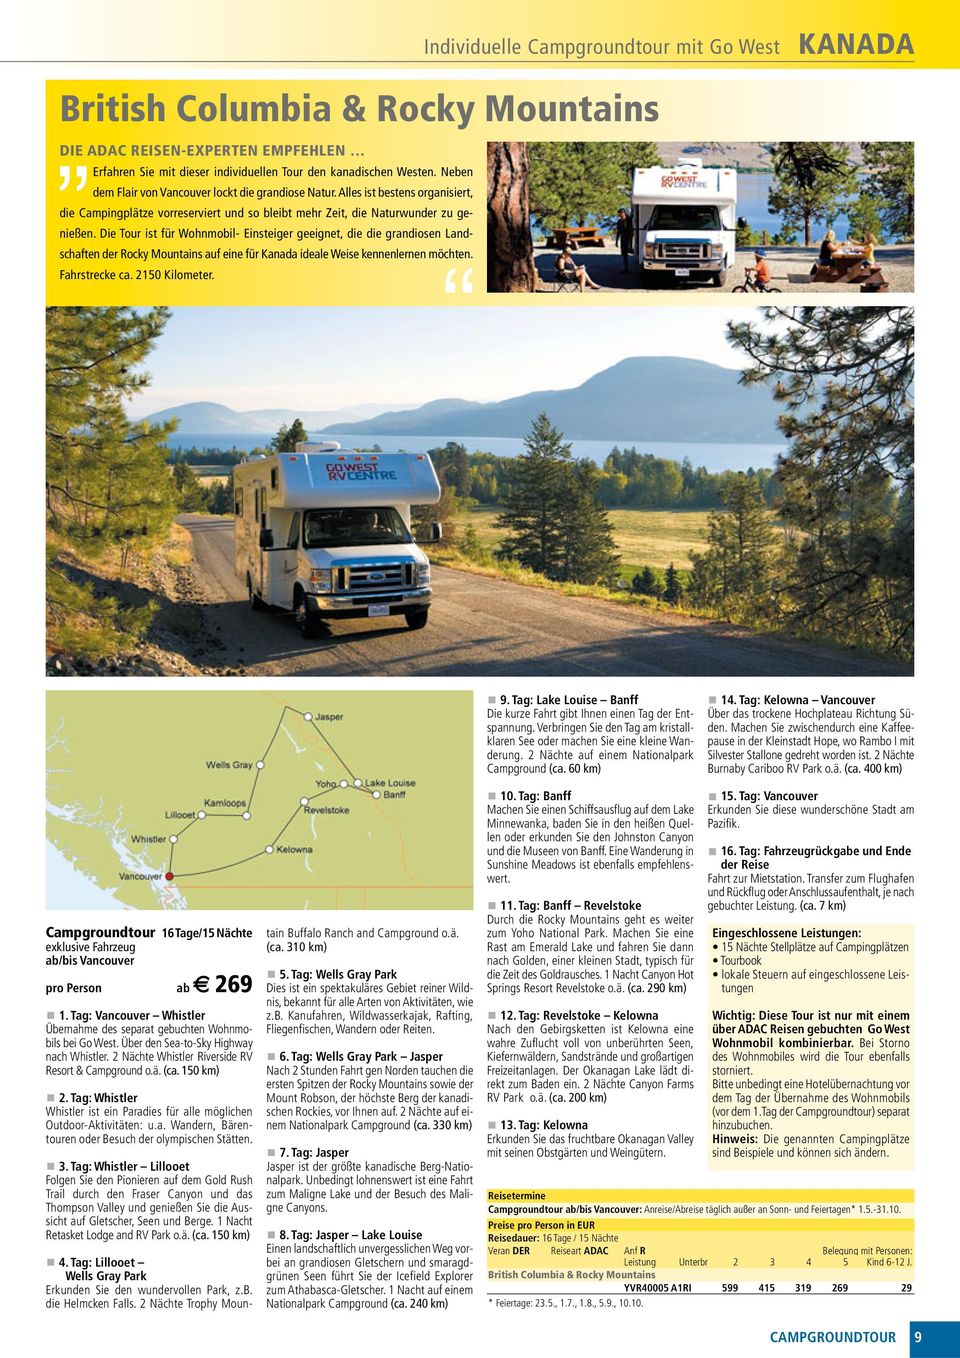 Die Tour ist für Wohnmobil- Einsteiger geeignet, die die grandiosen Landschaften der Rocky Mountains auf eine für Kanada ideale Weise kennenlernen möchten. Fahrstrecke ca. 2150 Kilometer.